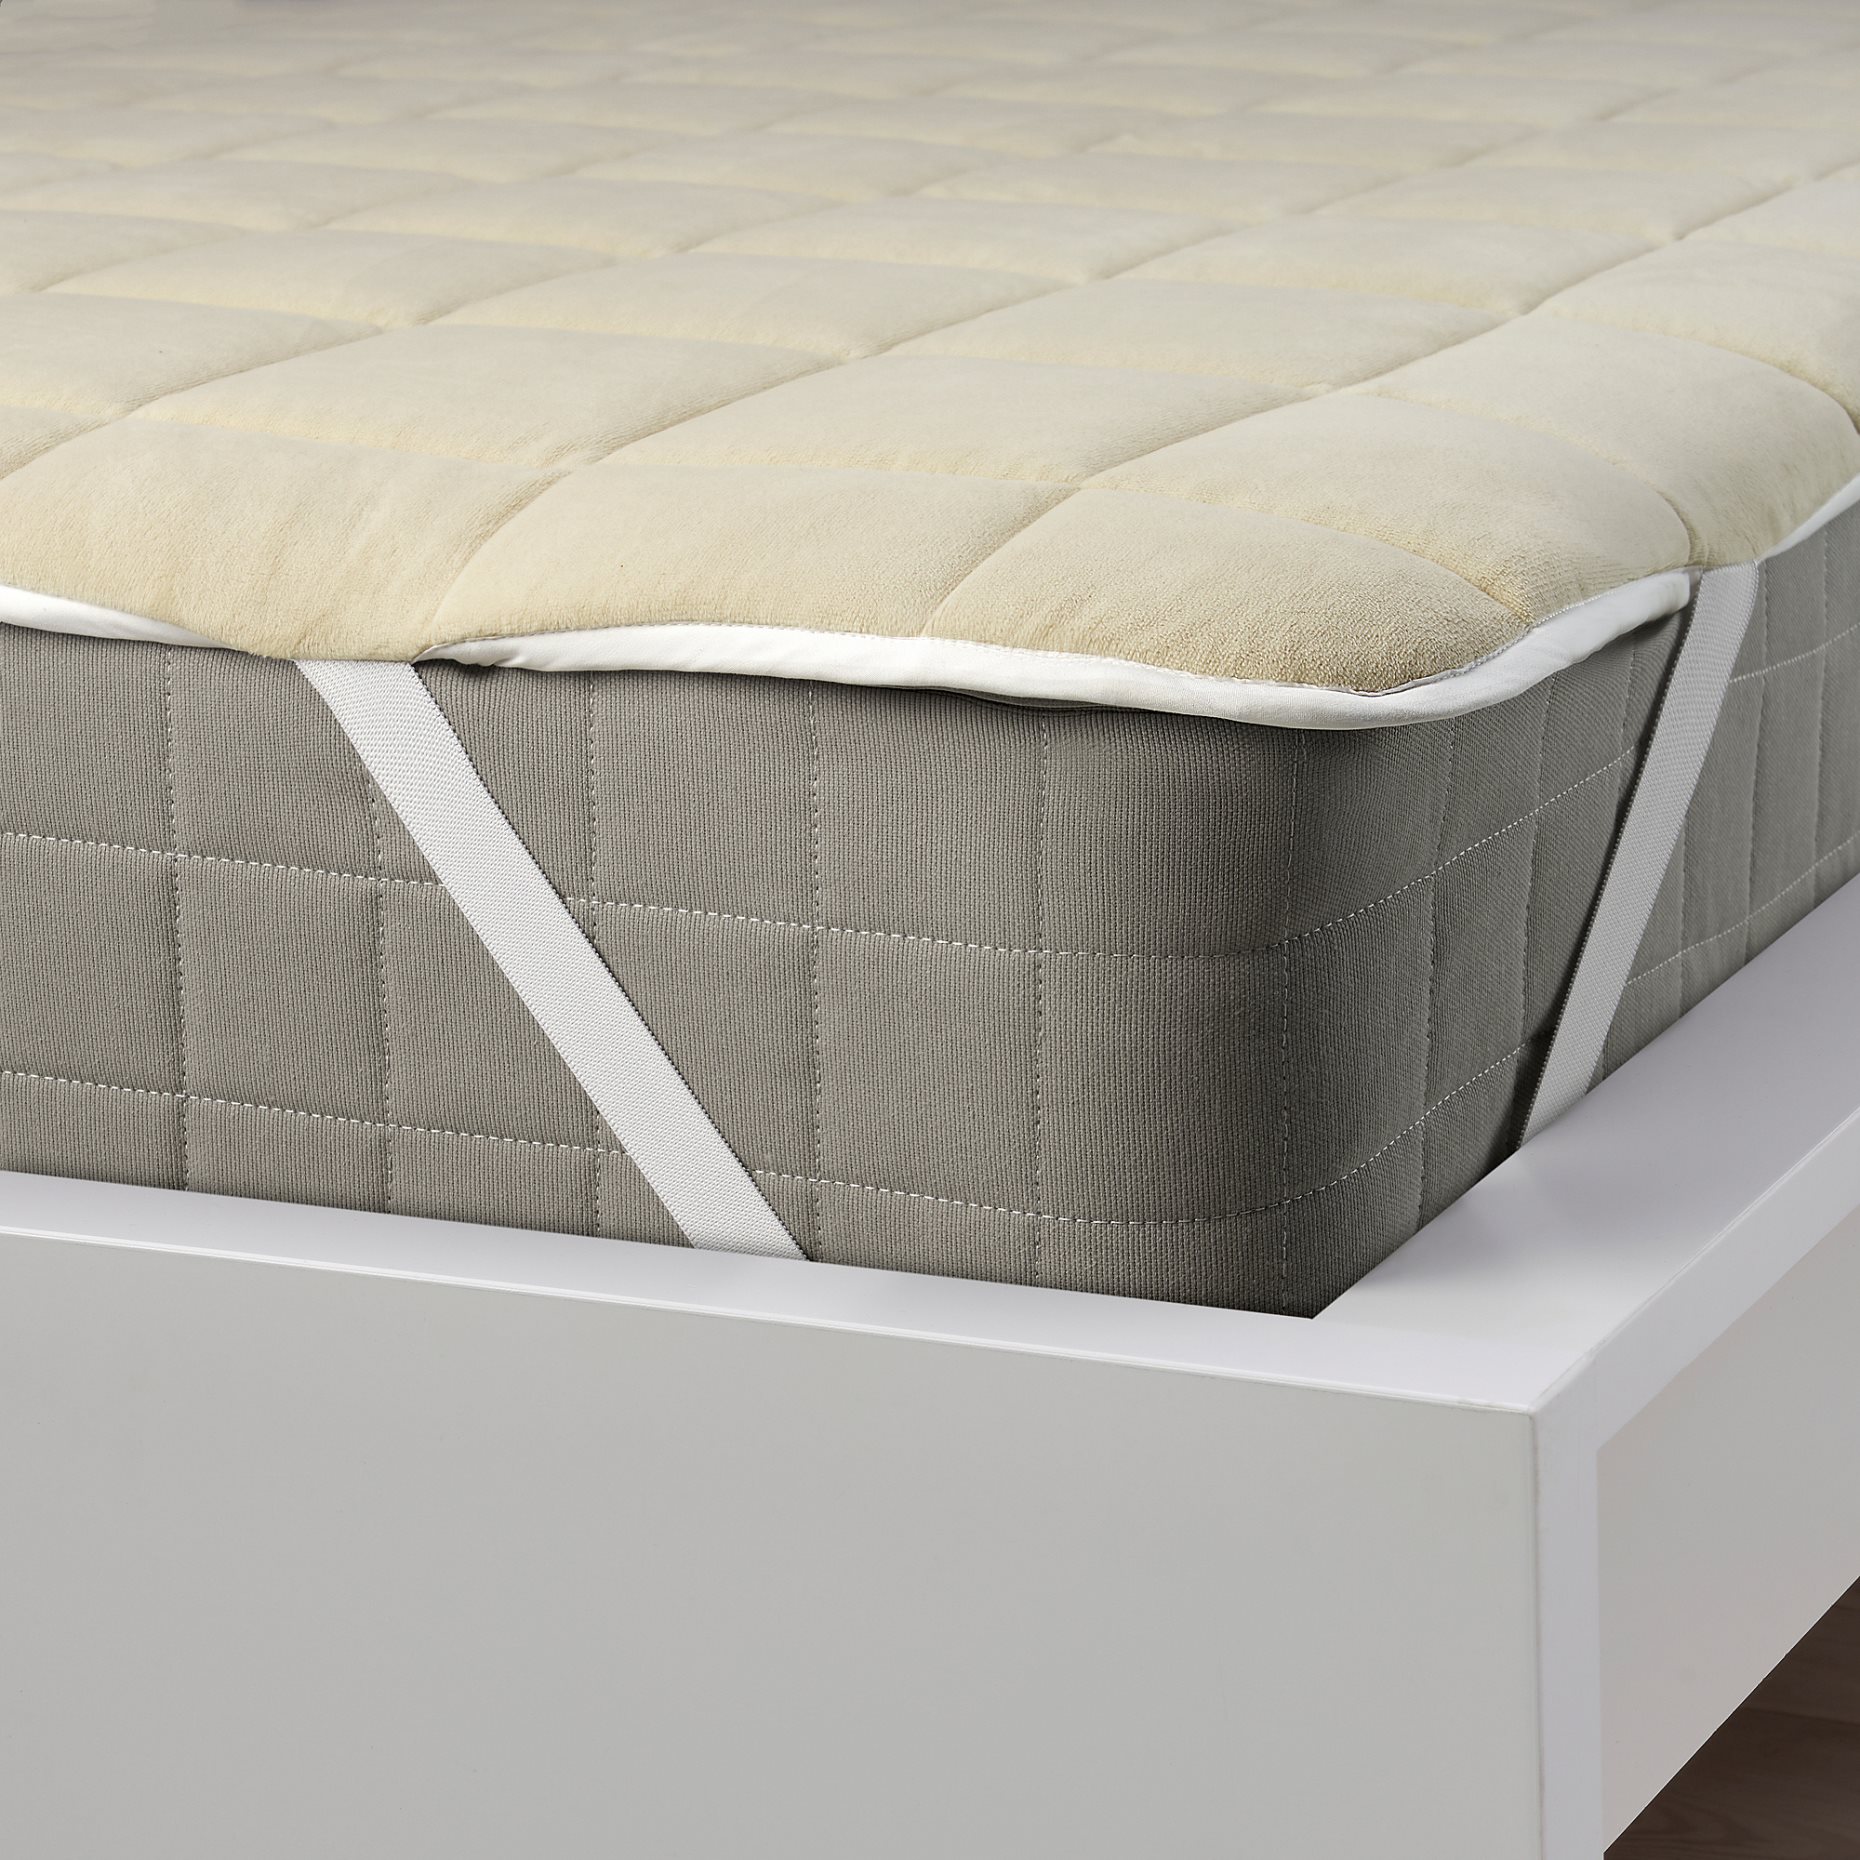 KEJSAROLVON, mattress protector, 140x200 cm, 905.804.29